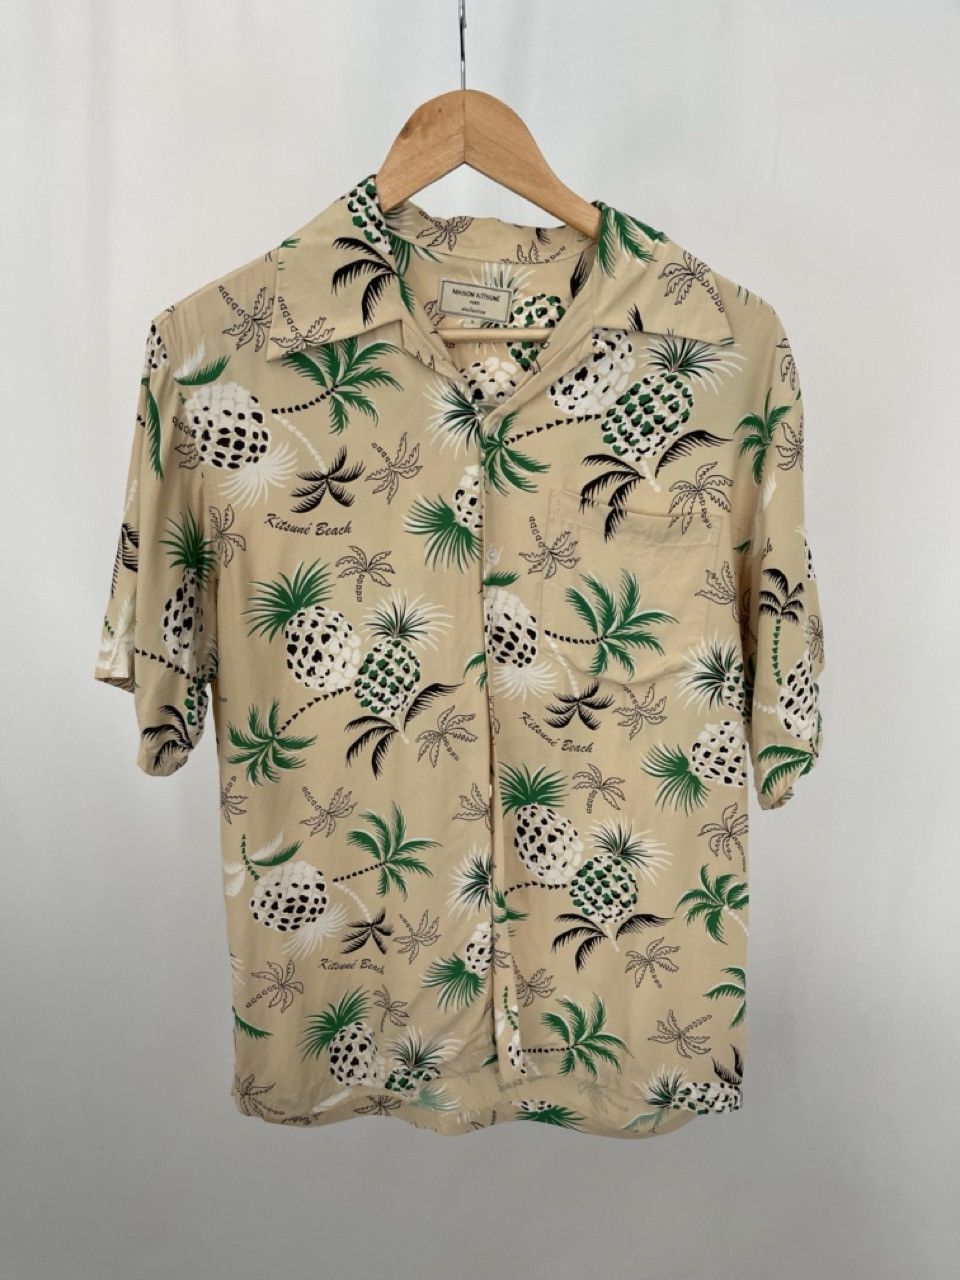 Maison Kitsune Maison Kitsune x Kona Bay Hawaiian Shirt 2019 | Grailed